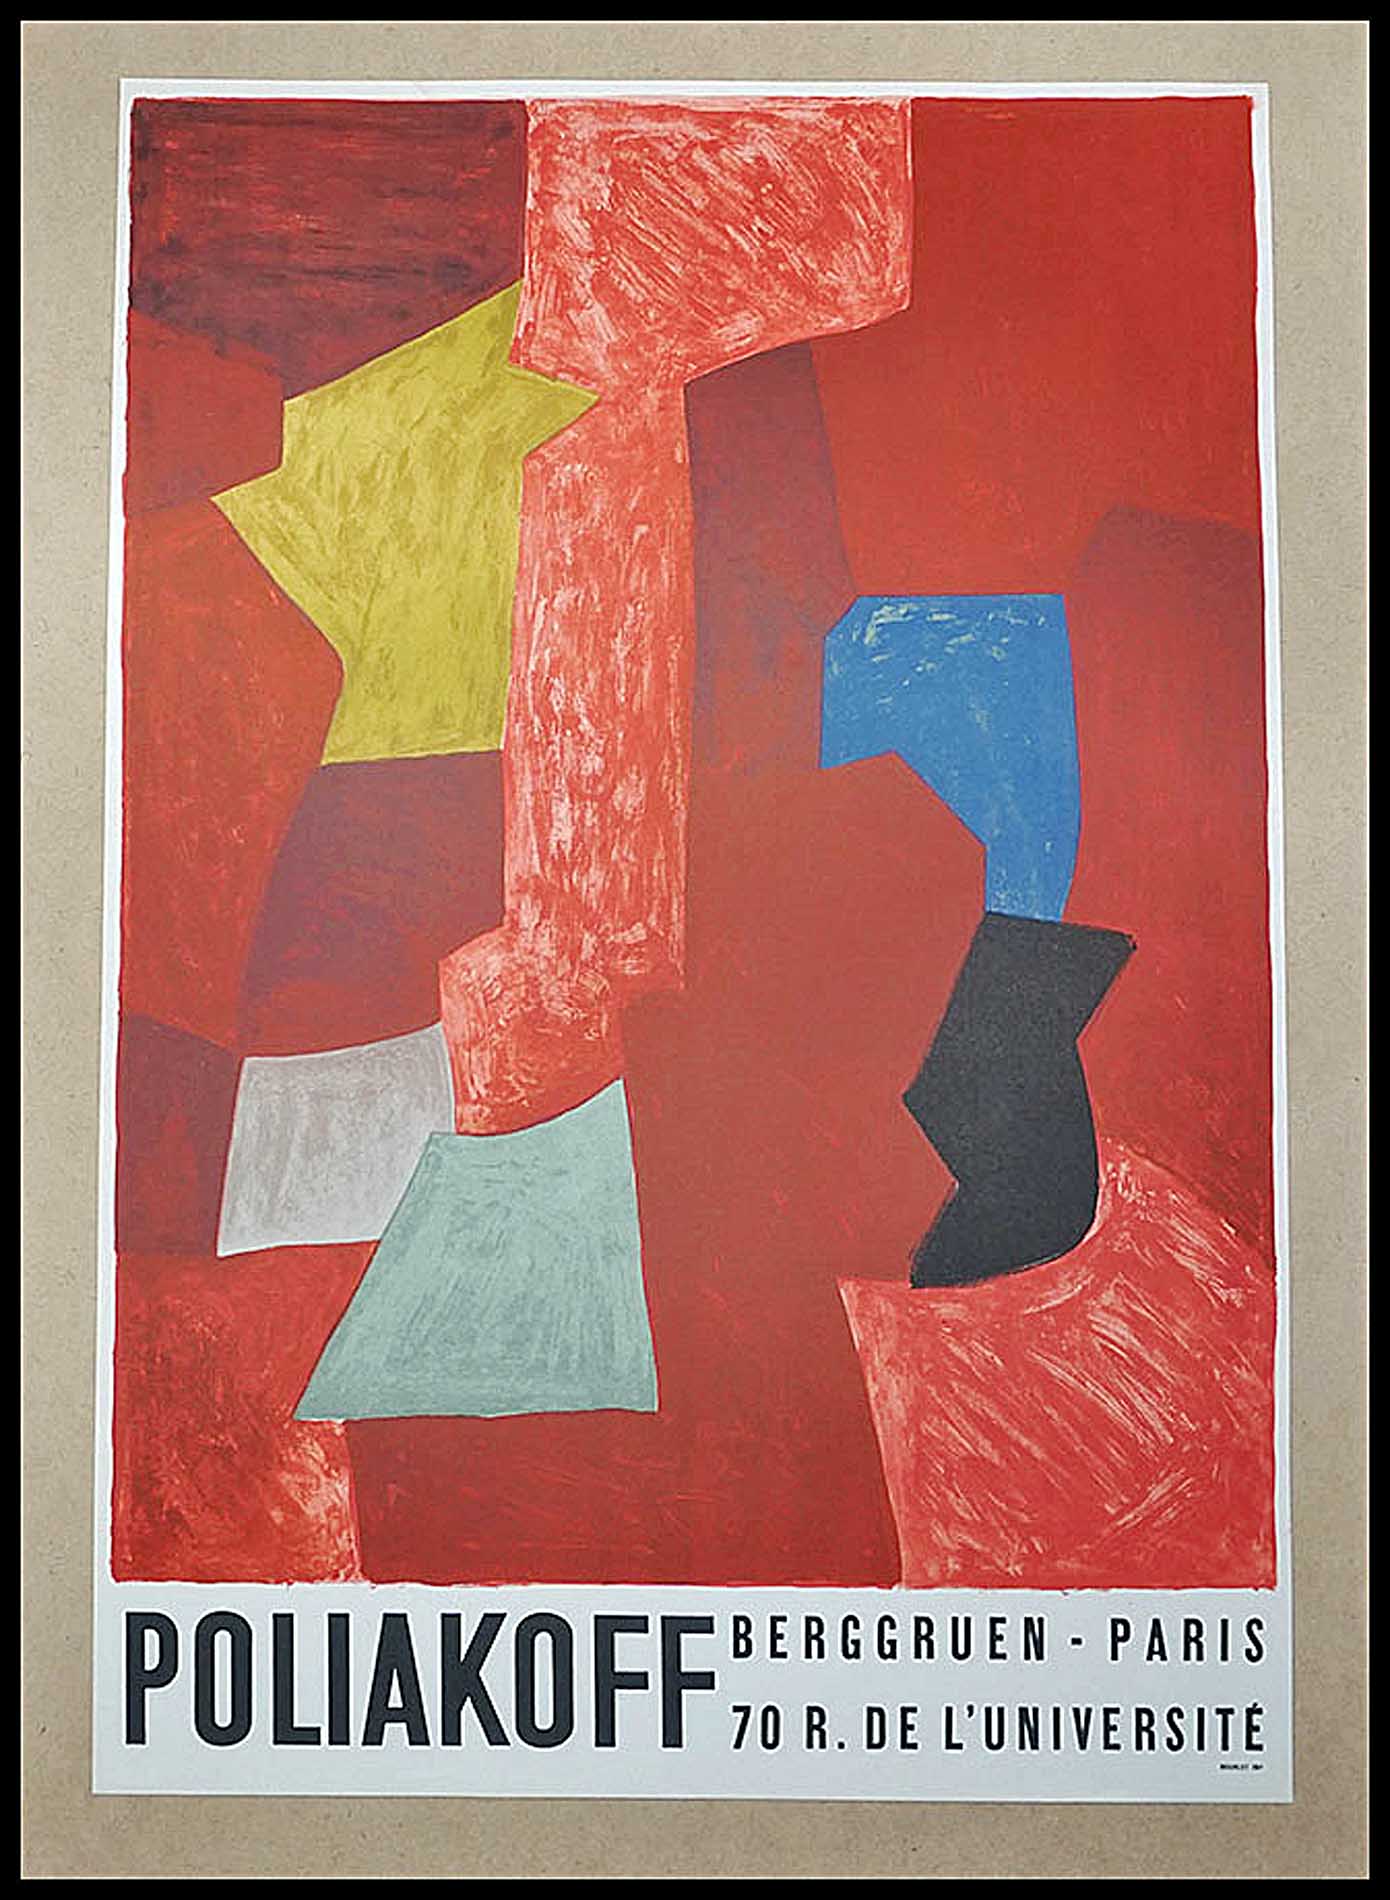 Poliakoff-Galerie Berggruen